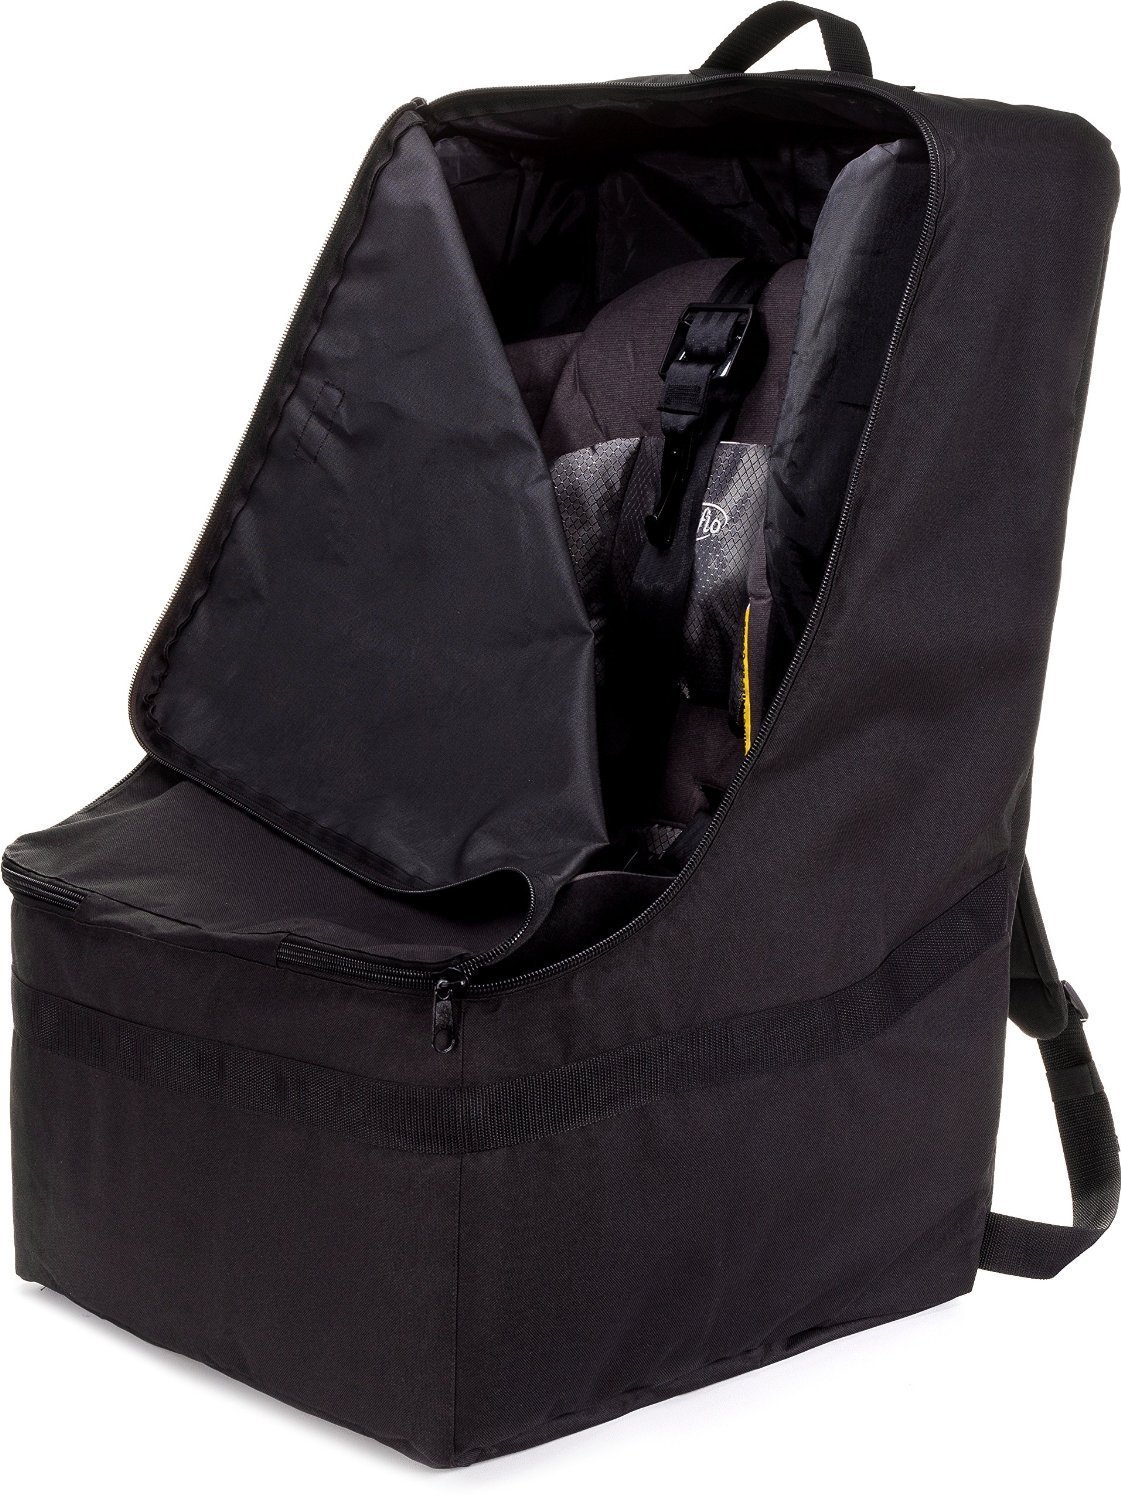 zohzo_car_seat_backpack_black_main.jpg